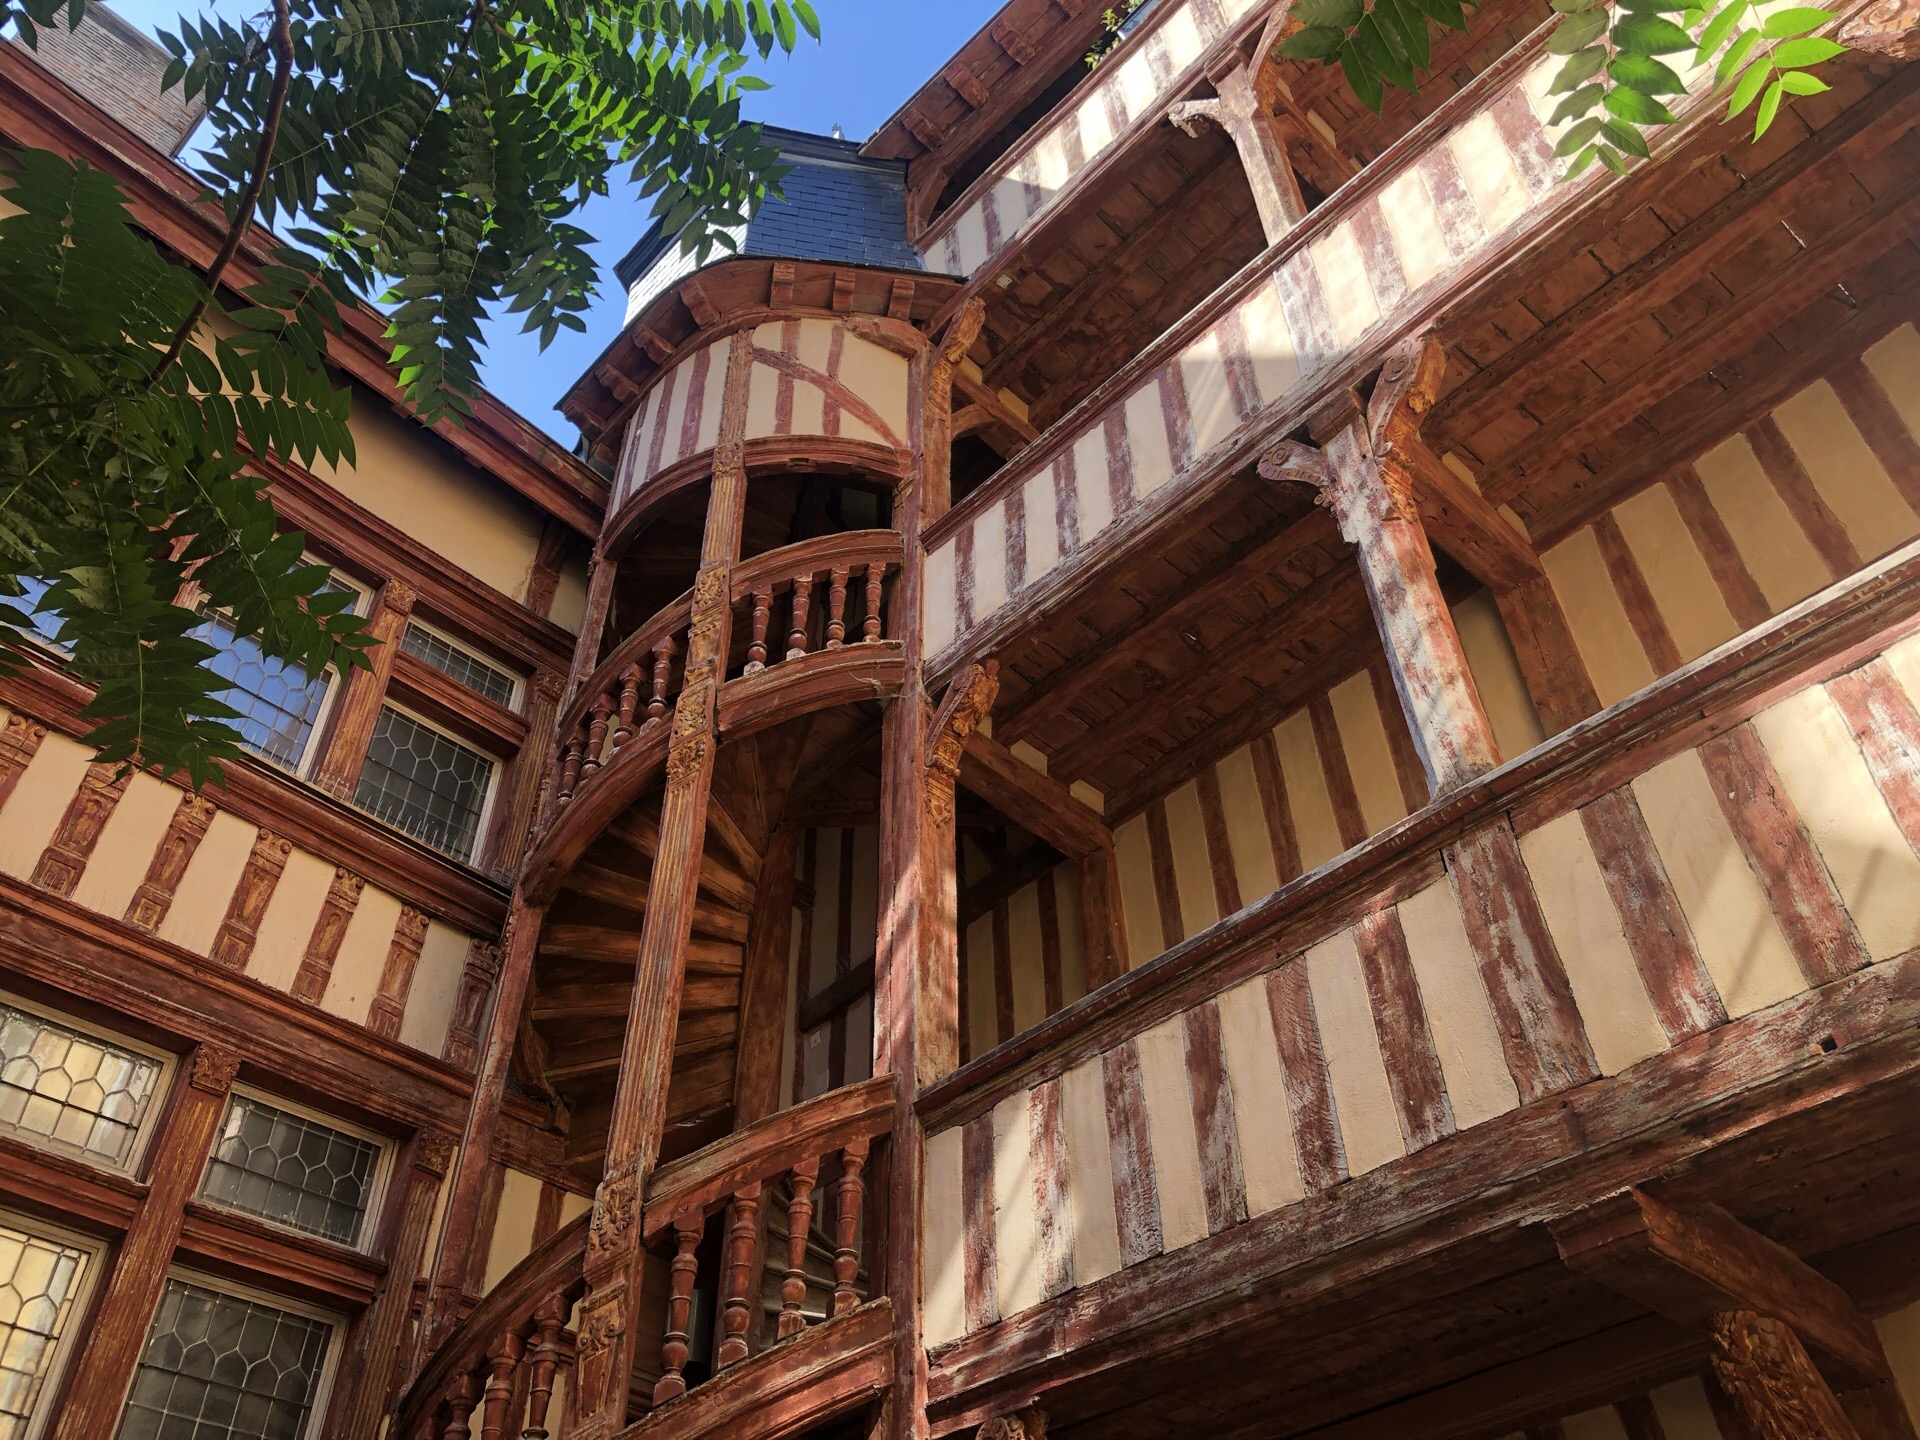 来到香槟区小镇Troyes特鲁瓦，走进这里，像走进封存在时光里的中世纪历史。保存完好的中世纪木制建筑